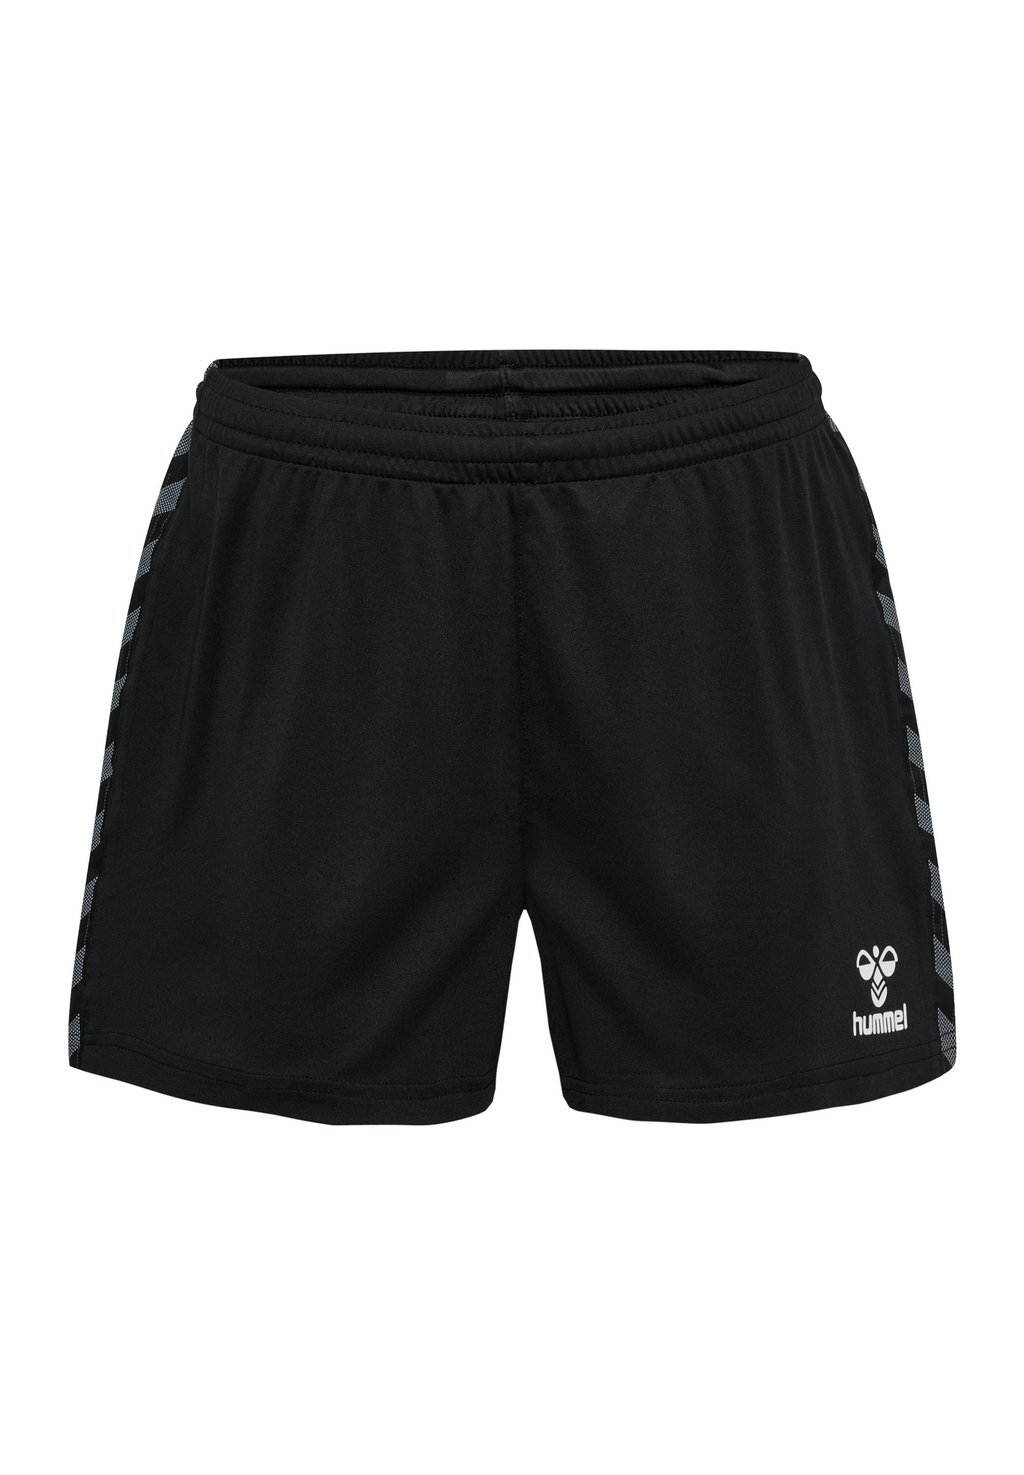 Спортивные шорты AUTHENTIC Hummel, цвет black спортивные брюки authentic hummel цвет black white